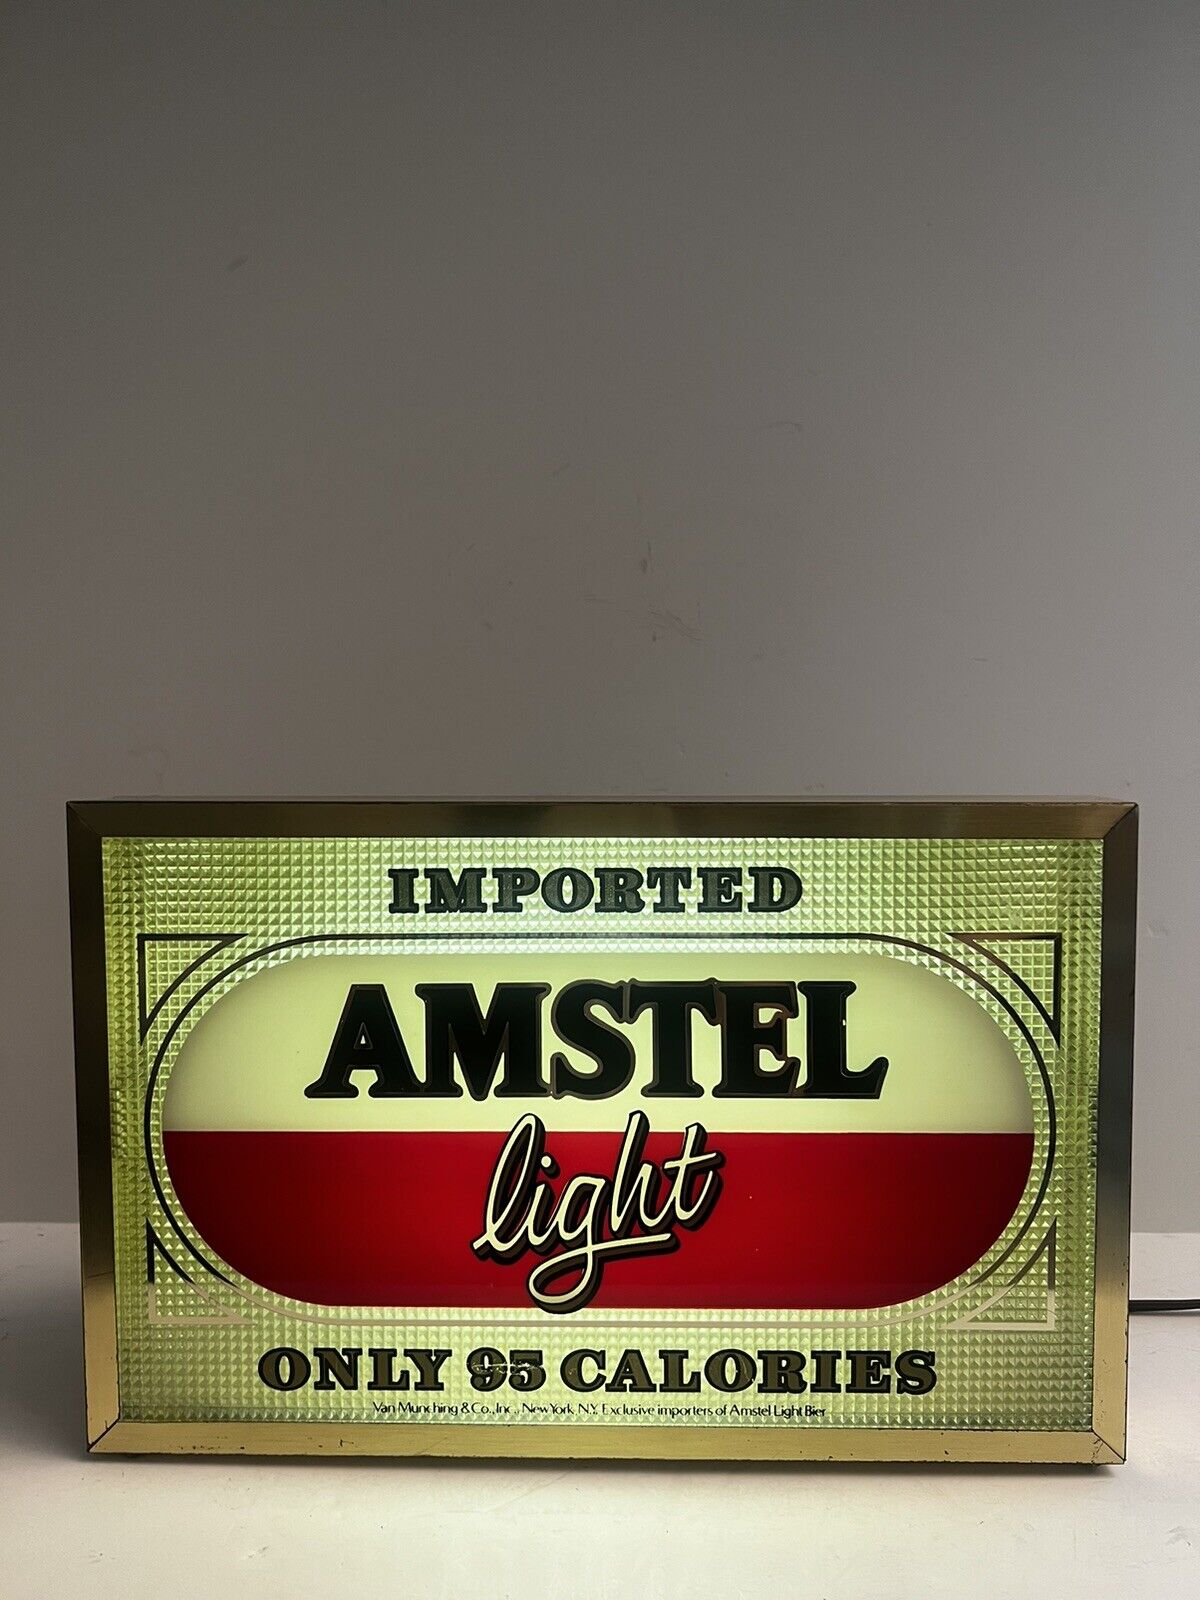 VTG 1980s AMSTEL Light Beer Eletric Bar Sign Tested & Works Man Cave Decor EUC